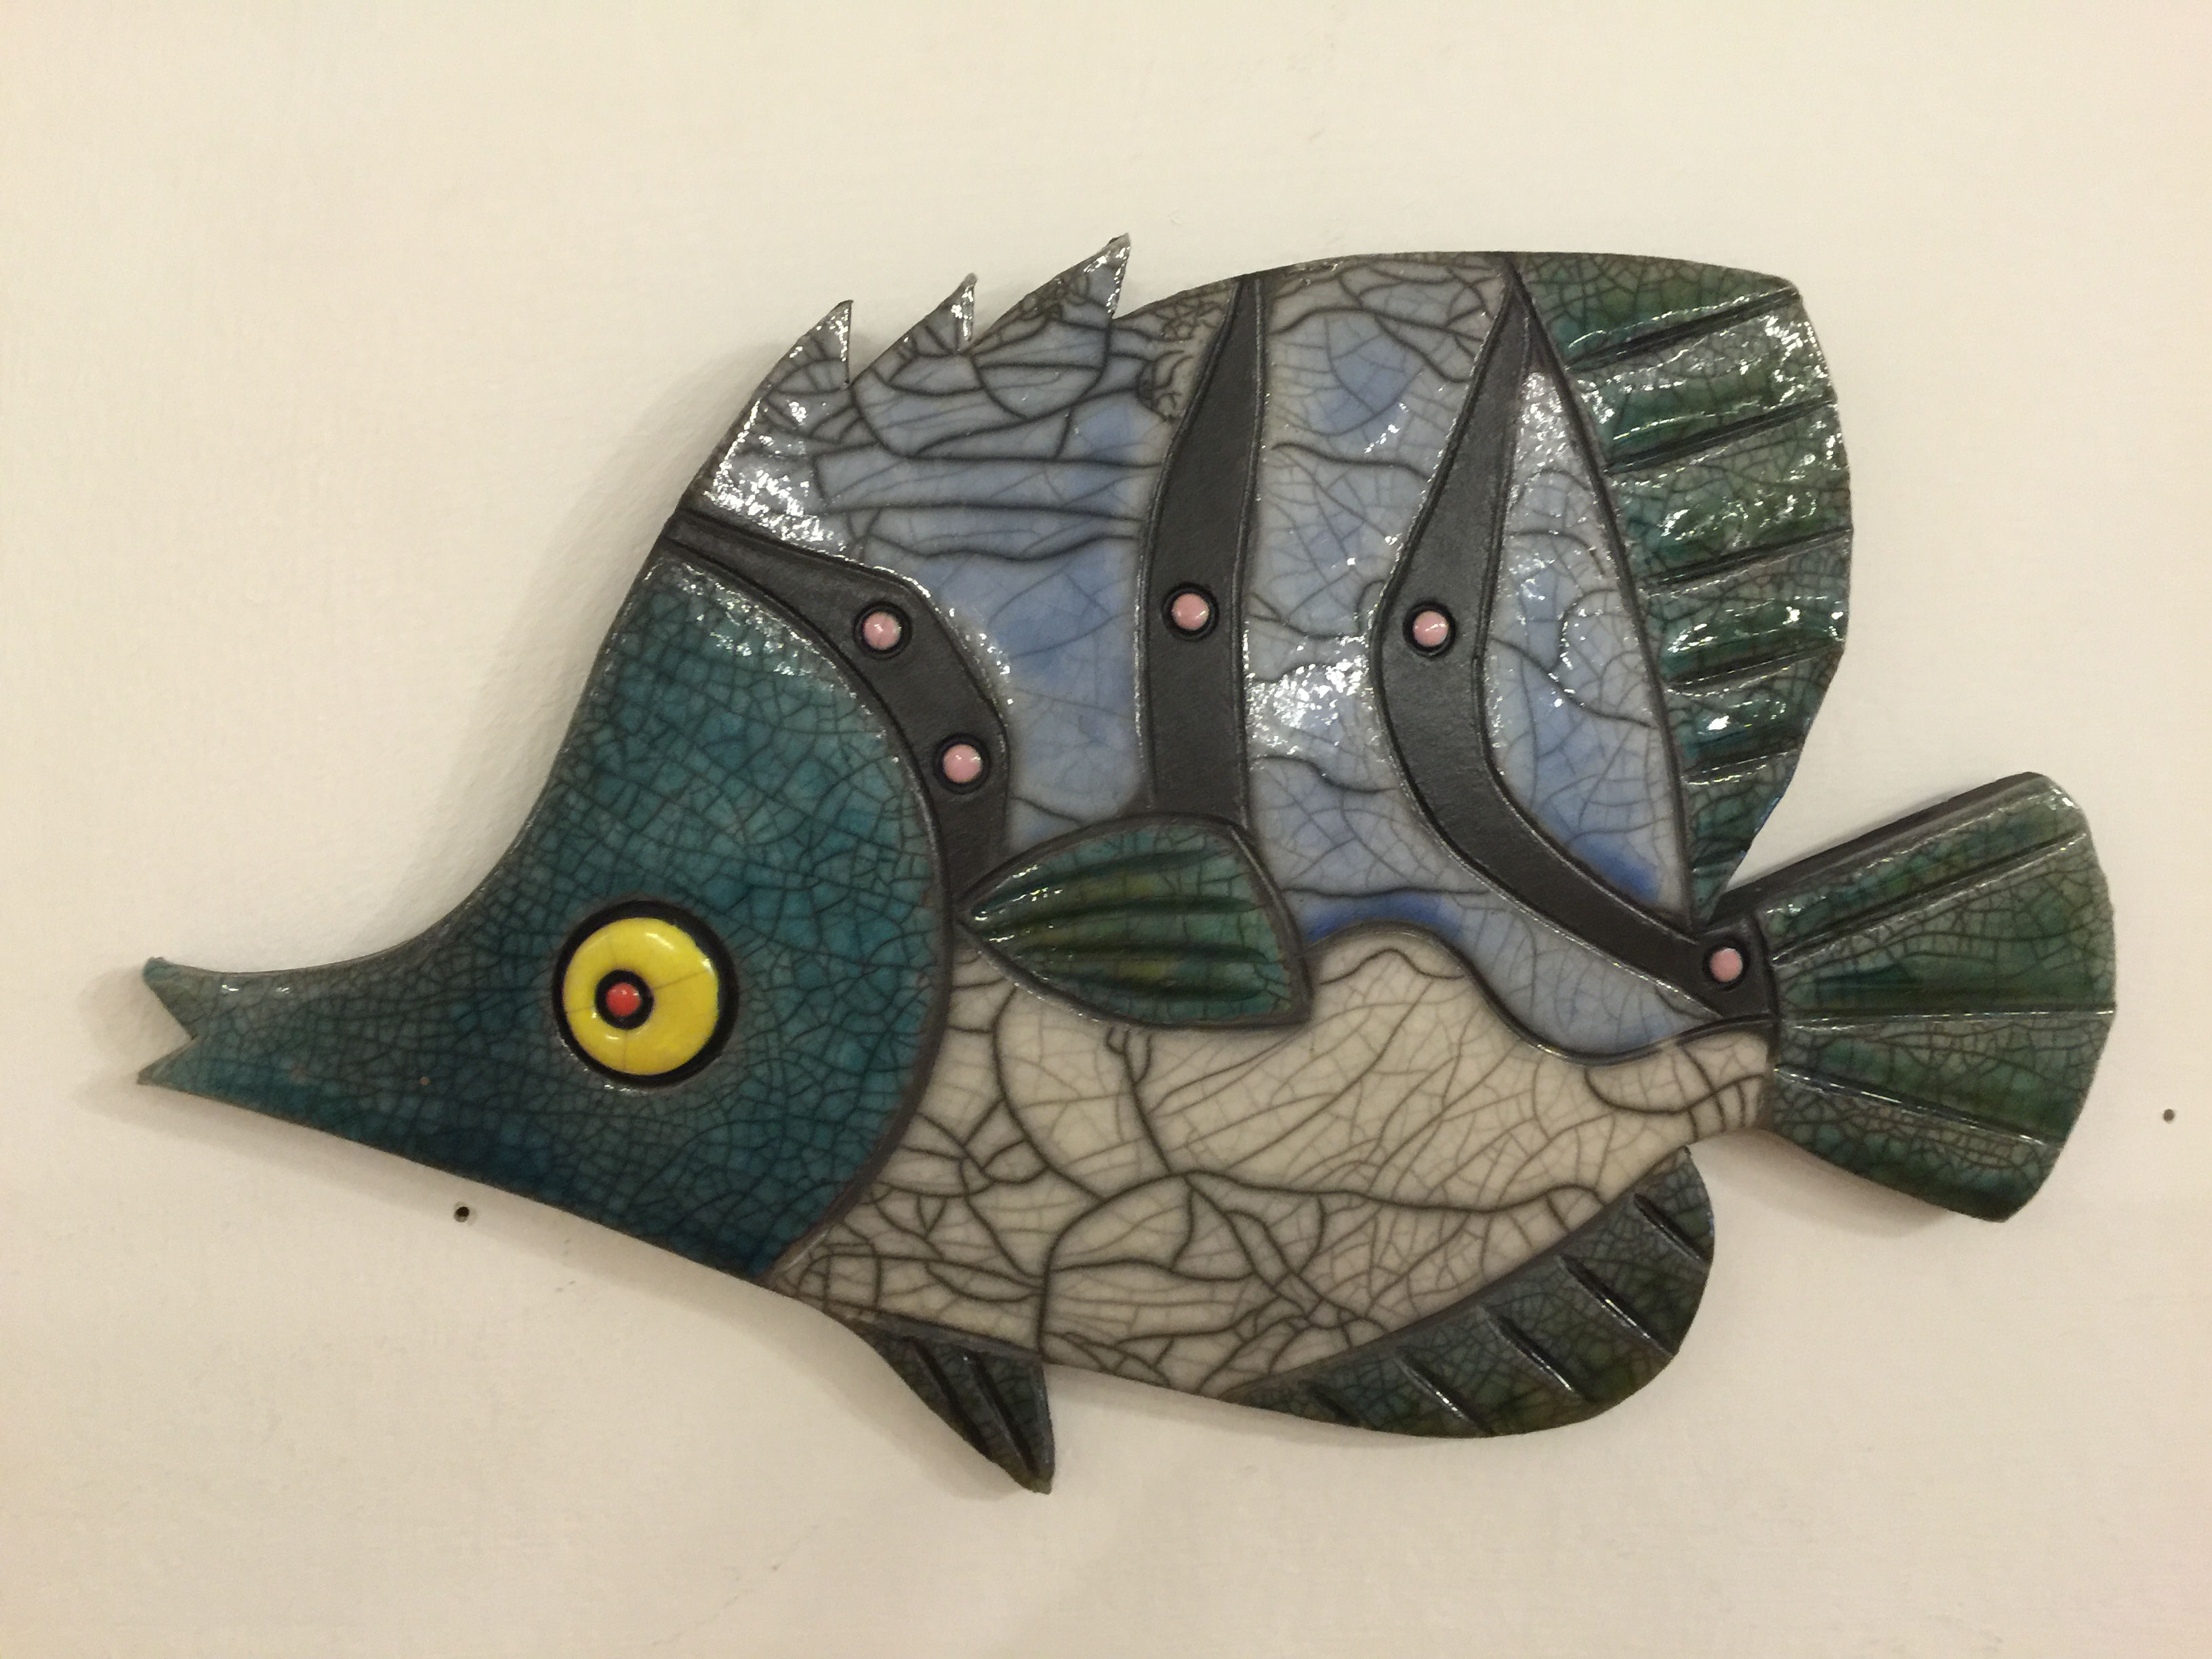 'Angel Fish II' by artist Julian Smith